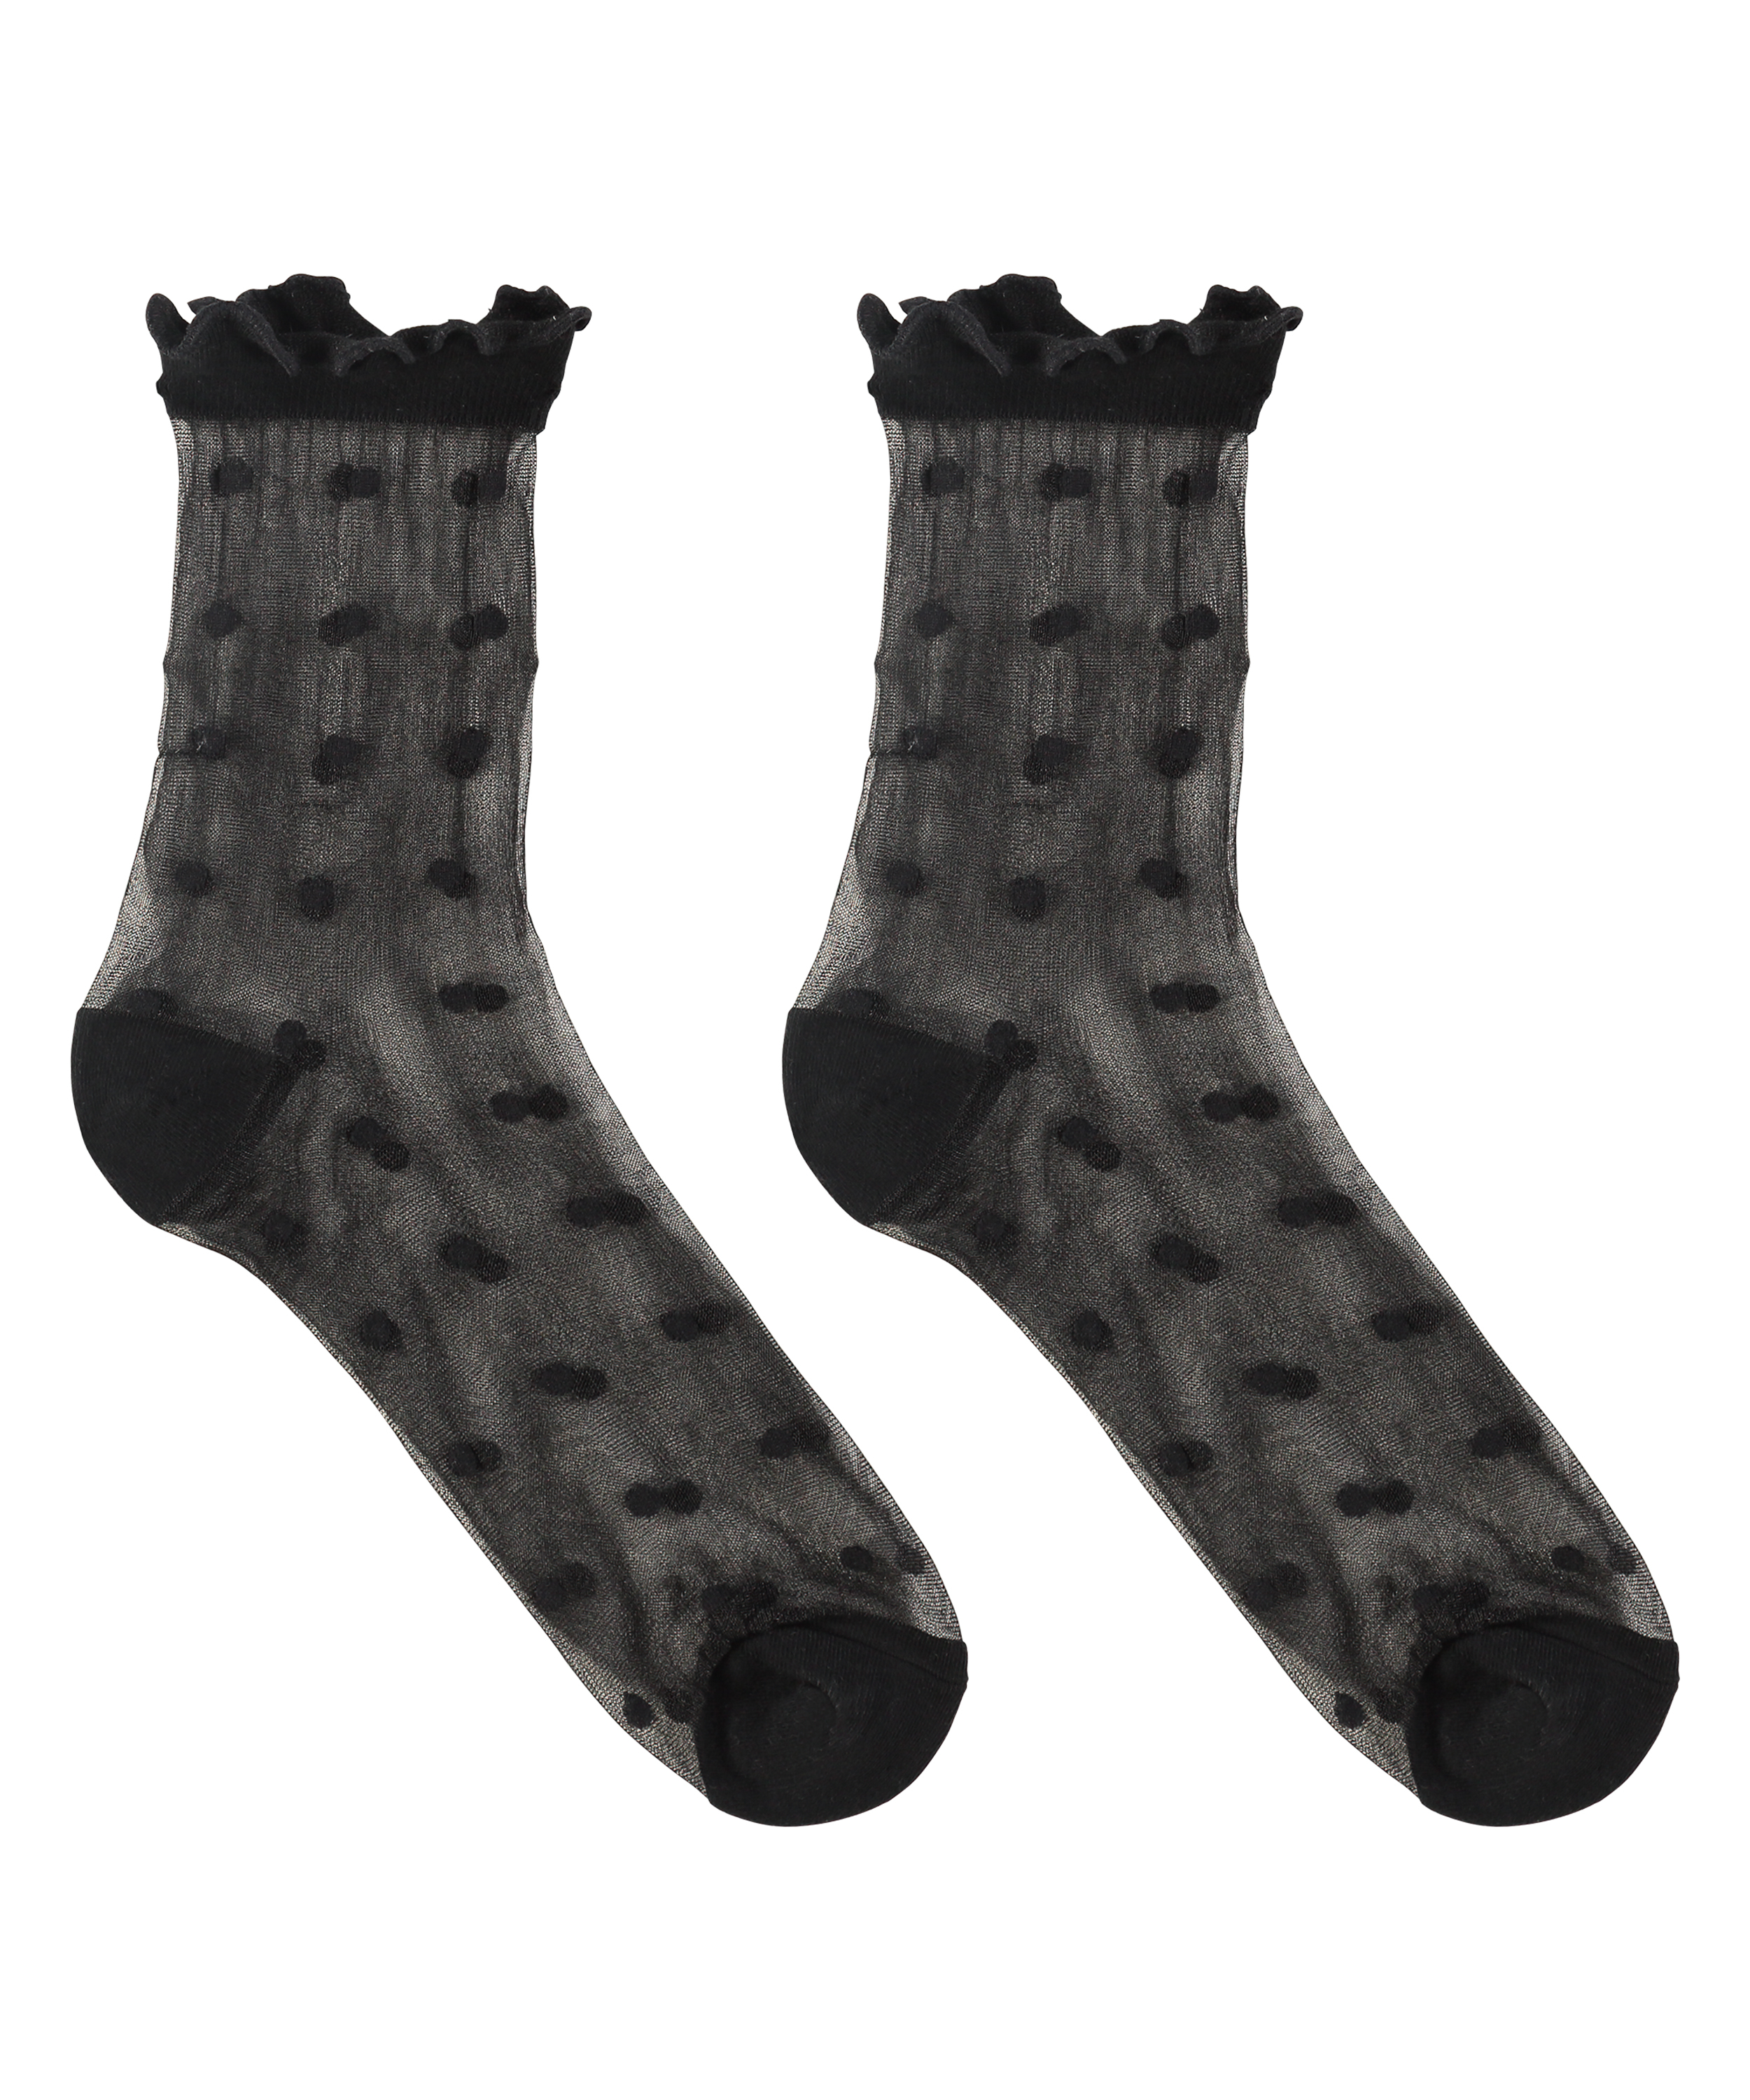 1 pair of Fashion socks, Black, main